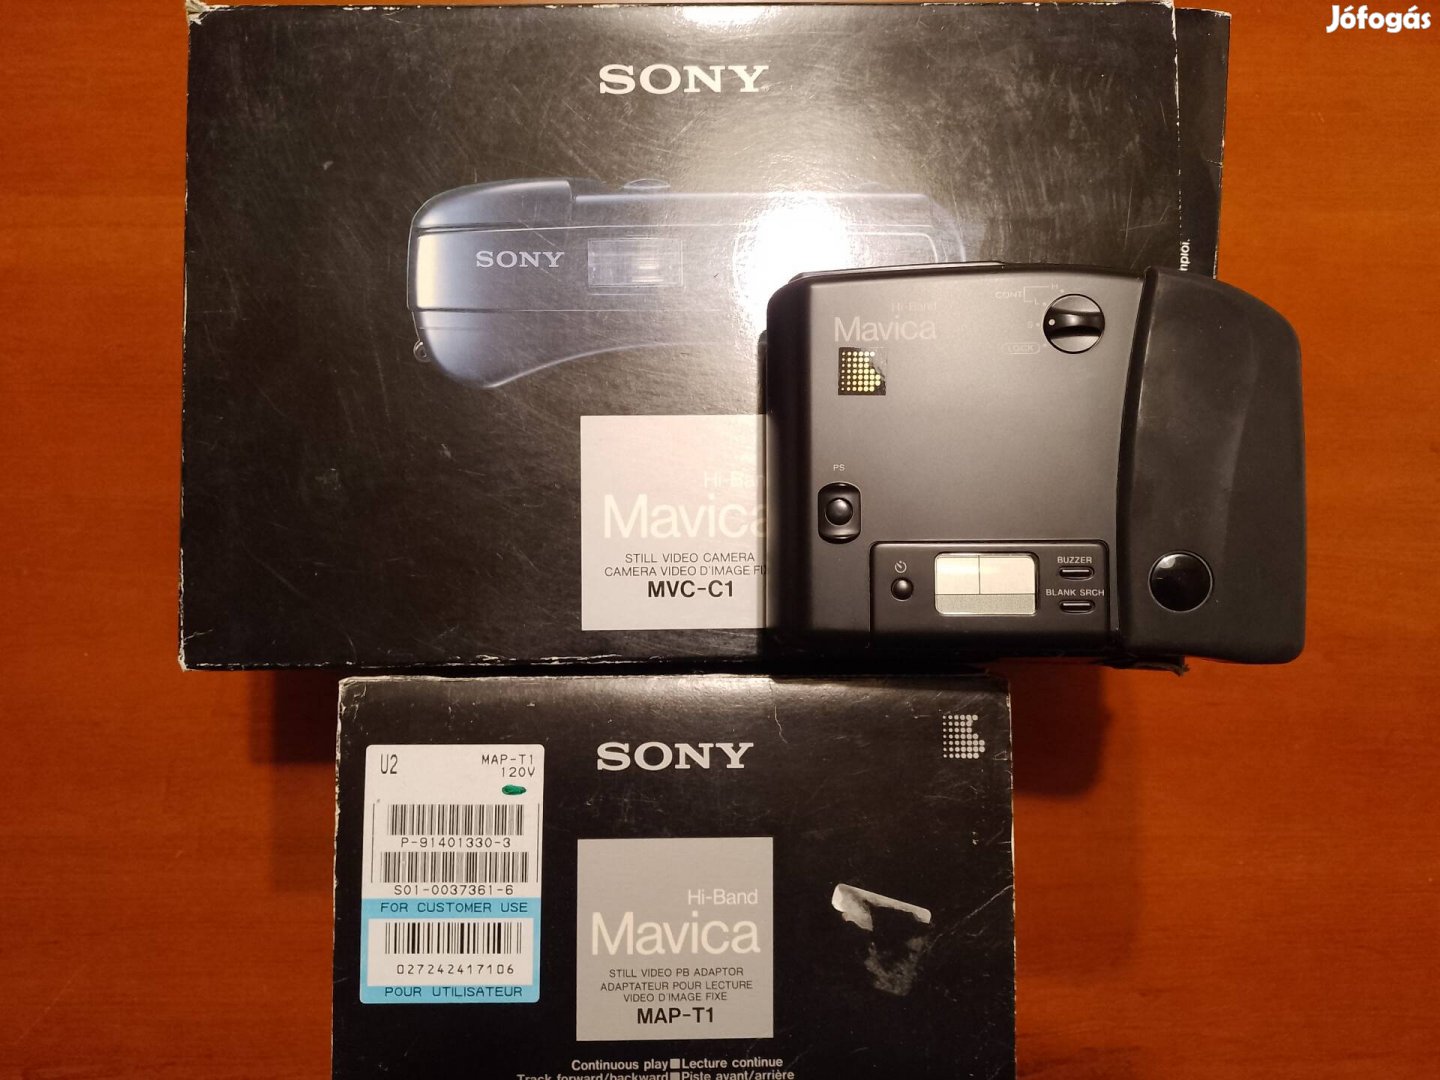 Eladó egy Sony MVC-C1 Mavica fényképezőgép walkman